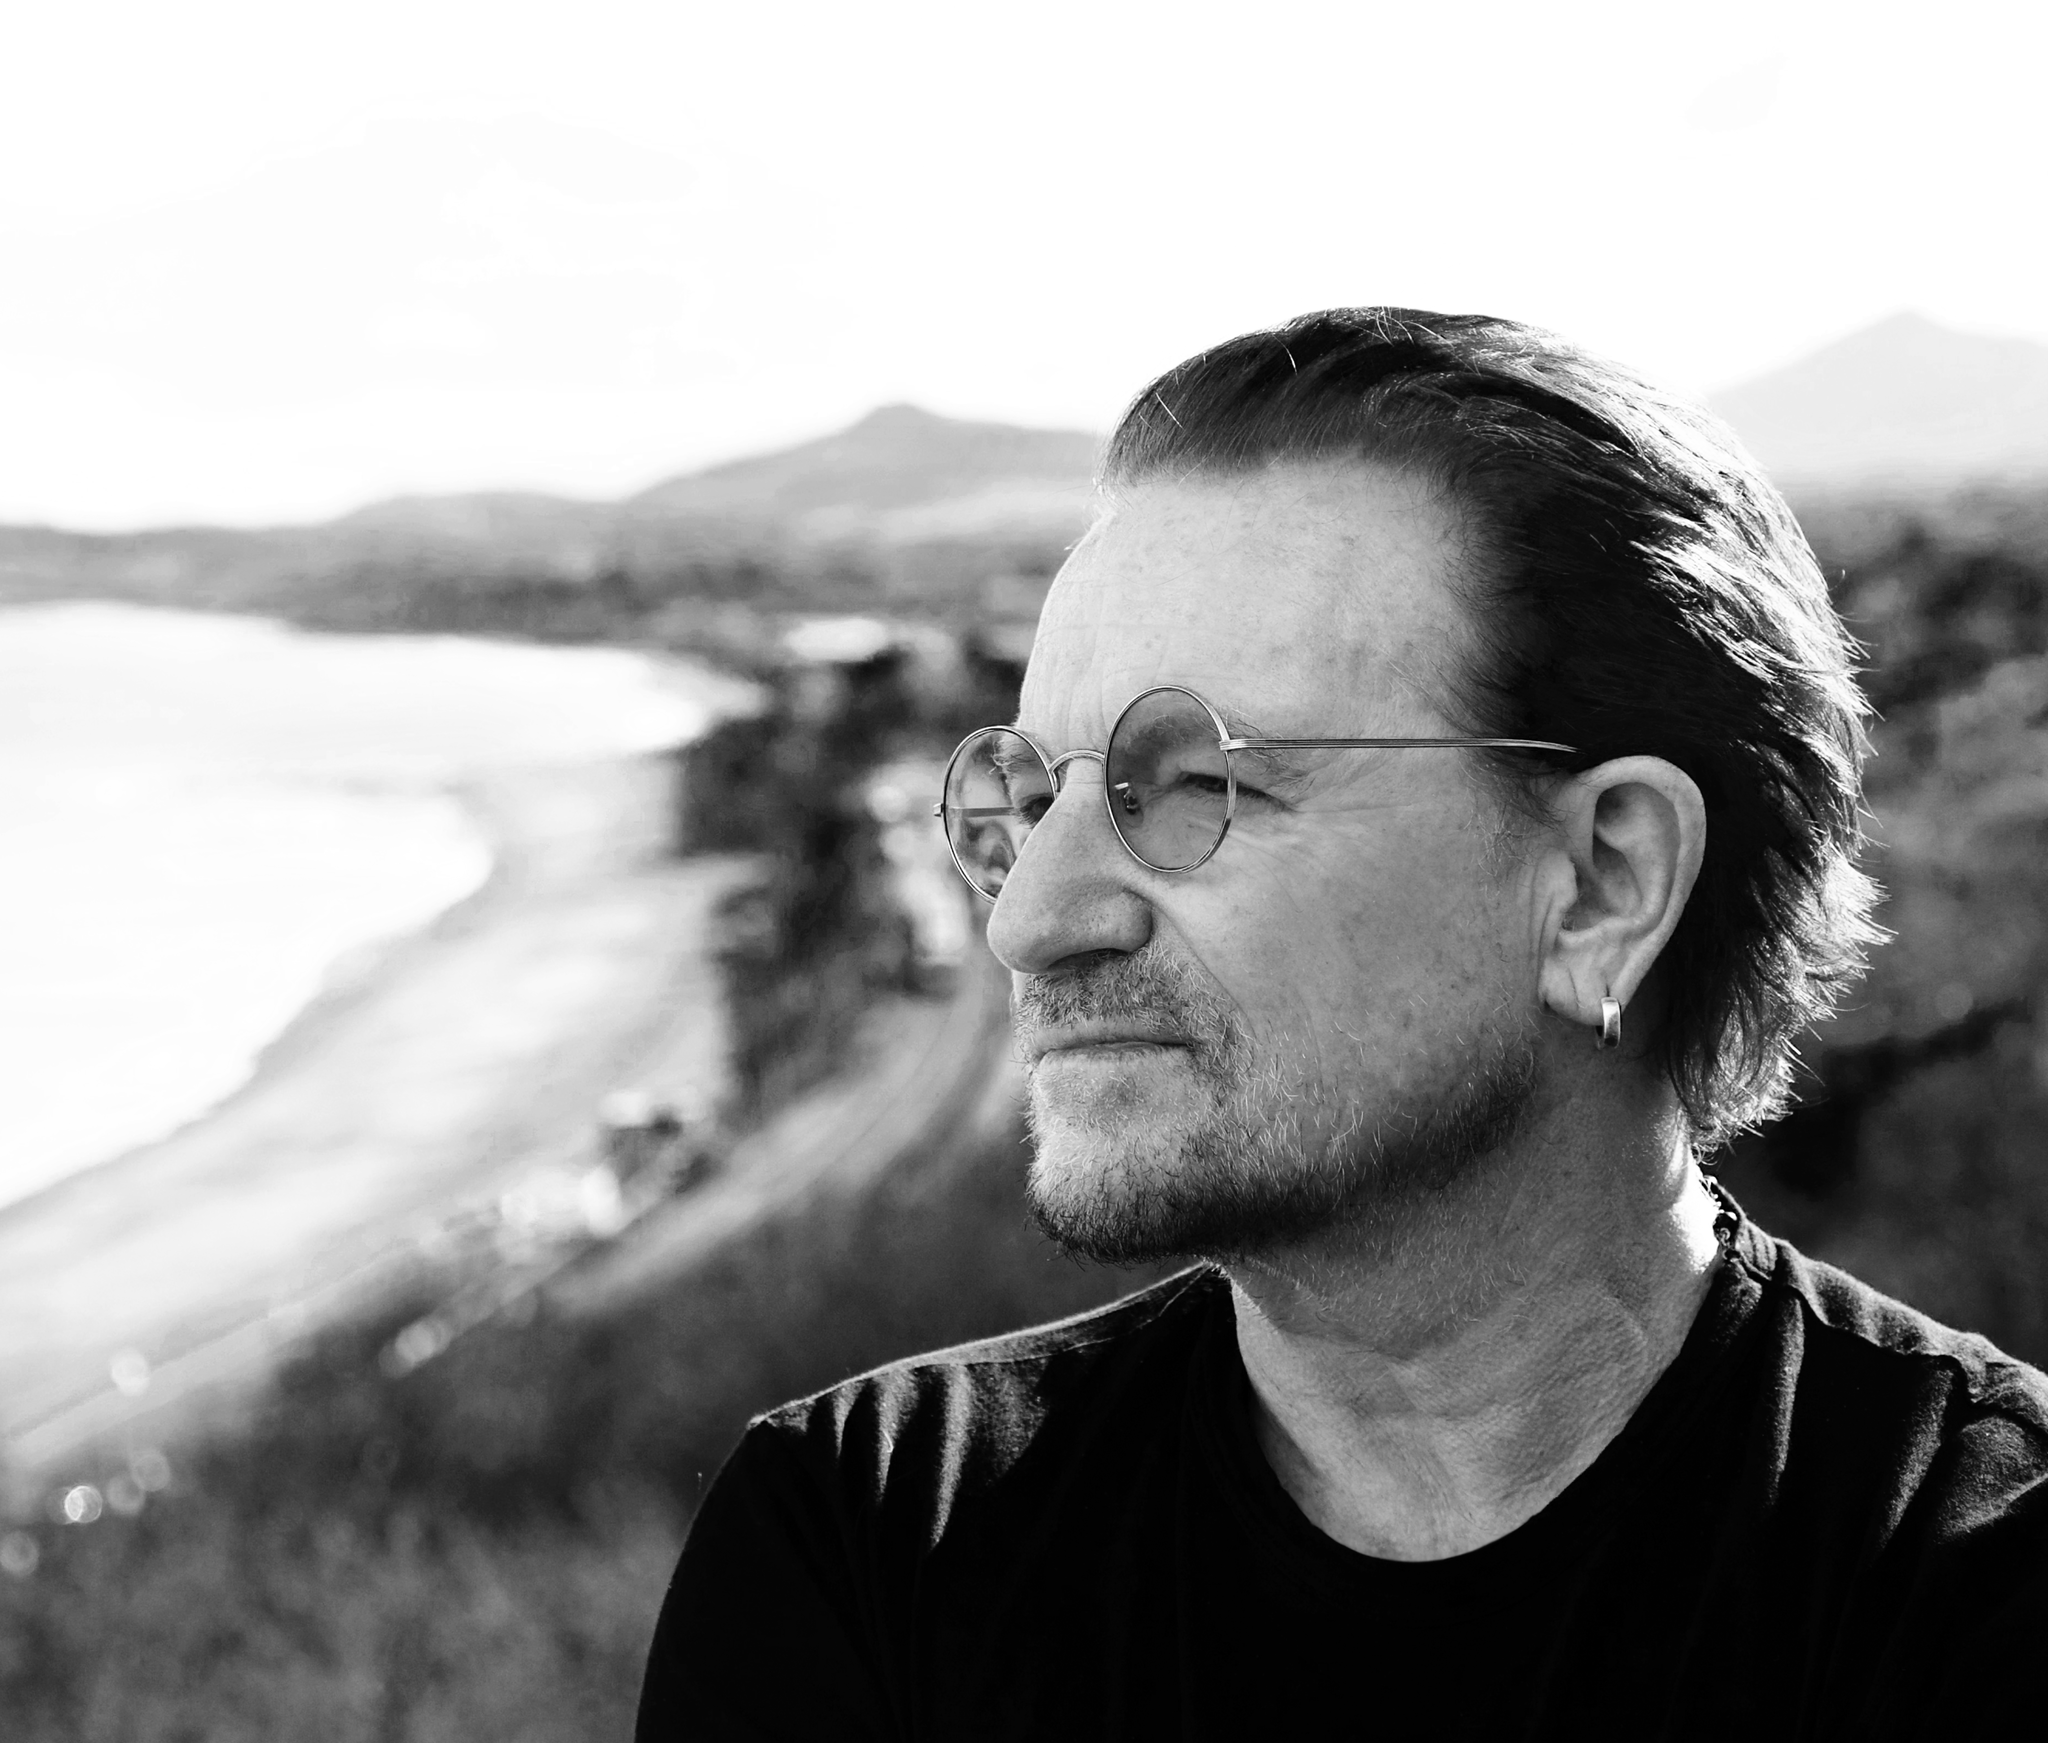 La conversión al cristianismo del cantante Bono de U2 – Historias de fe